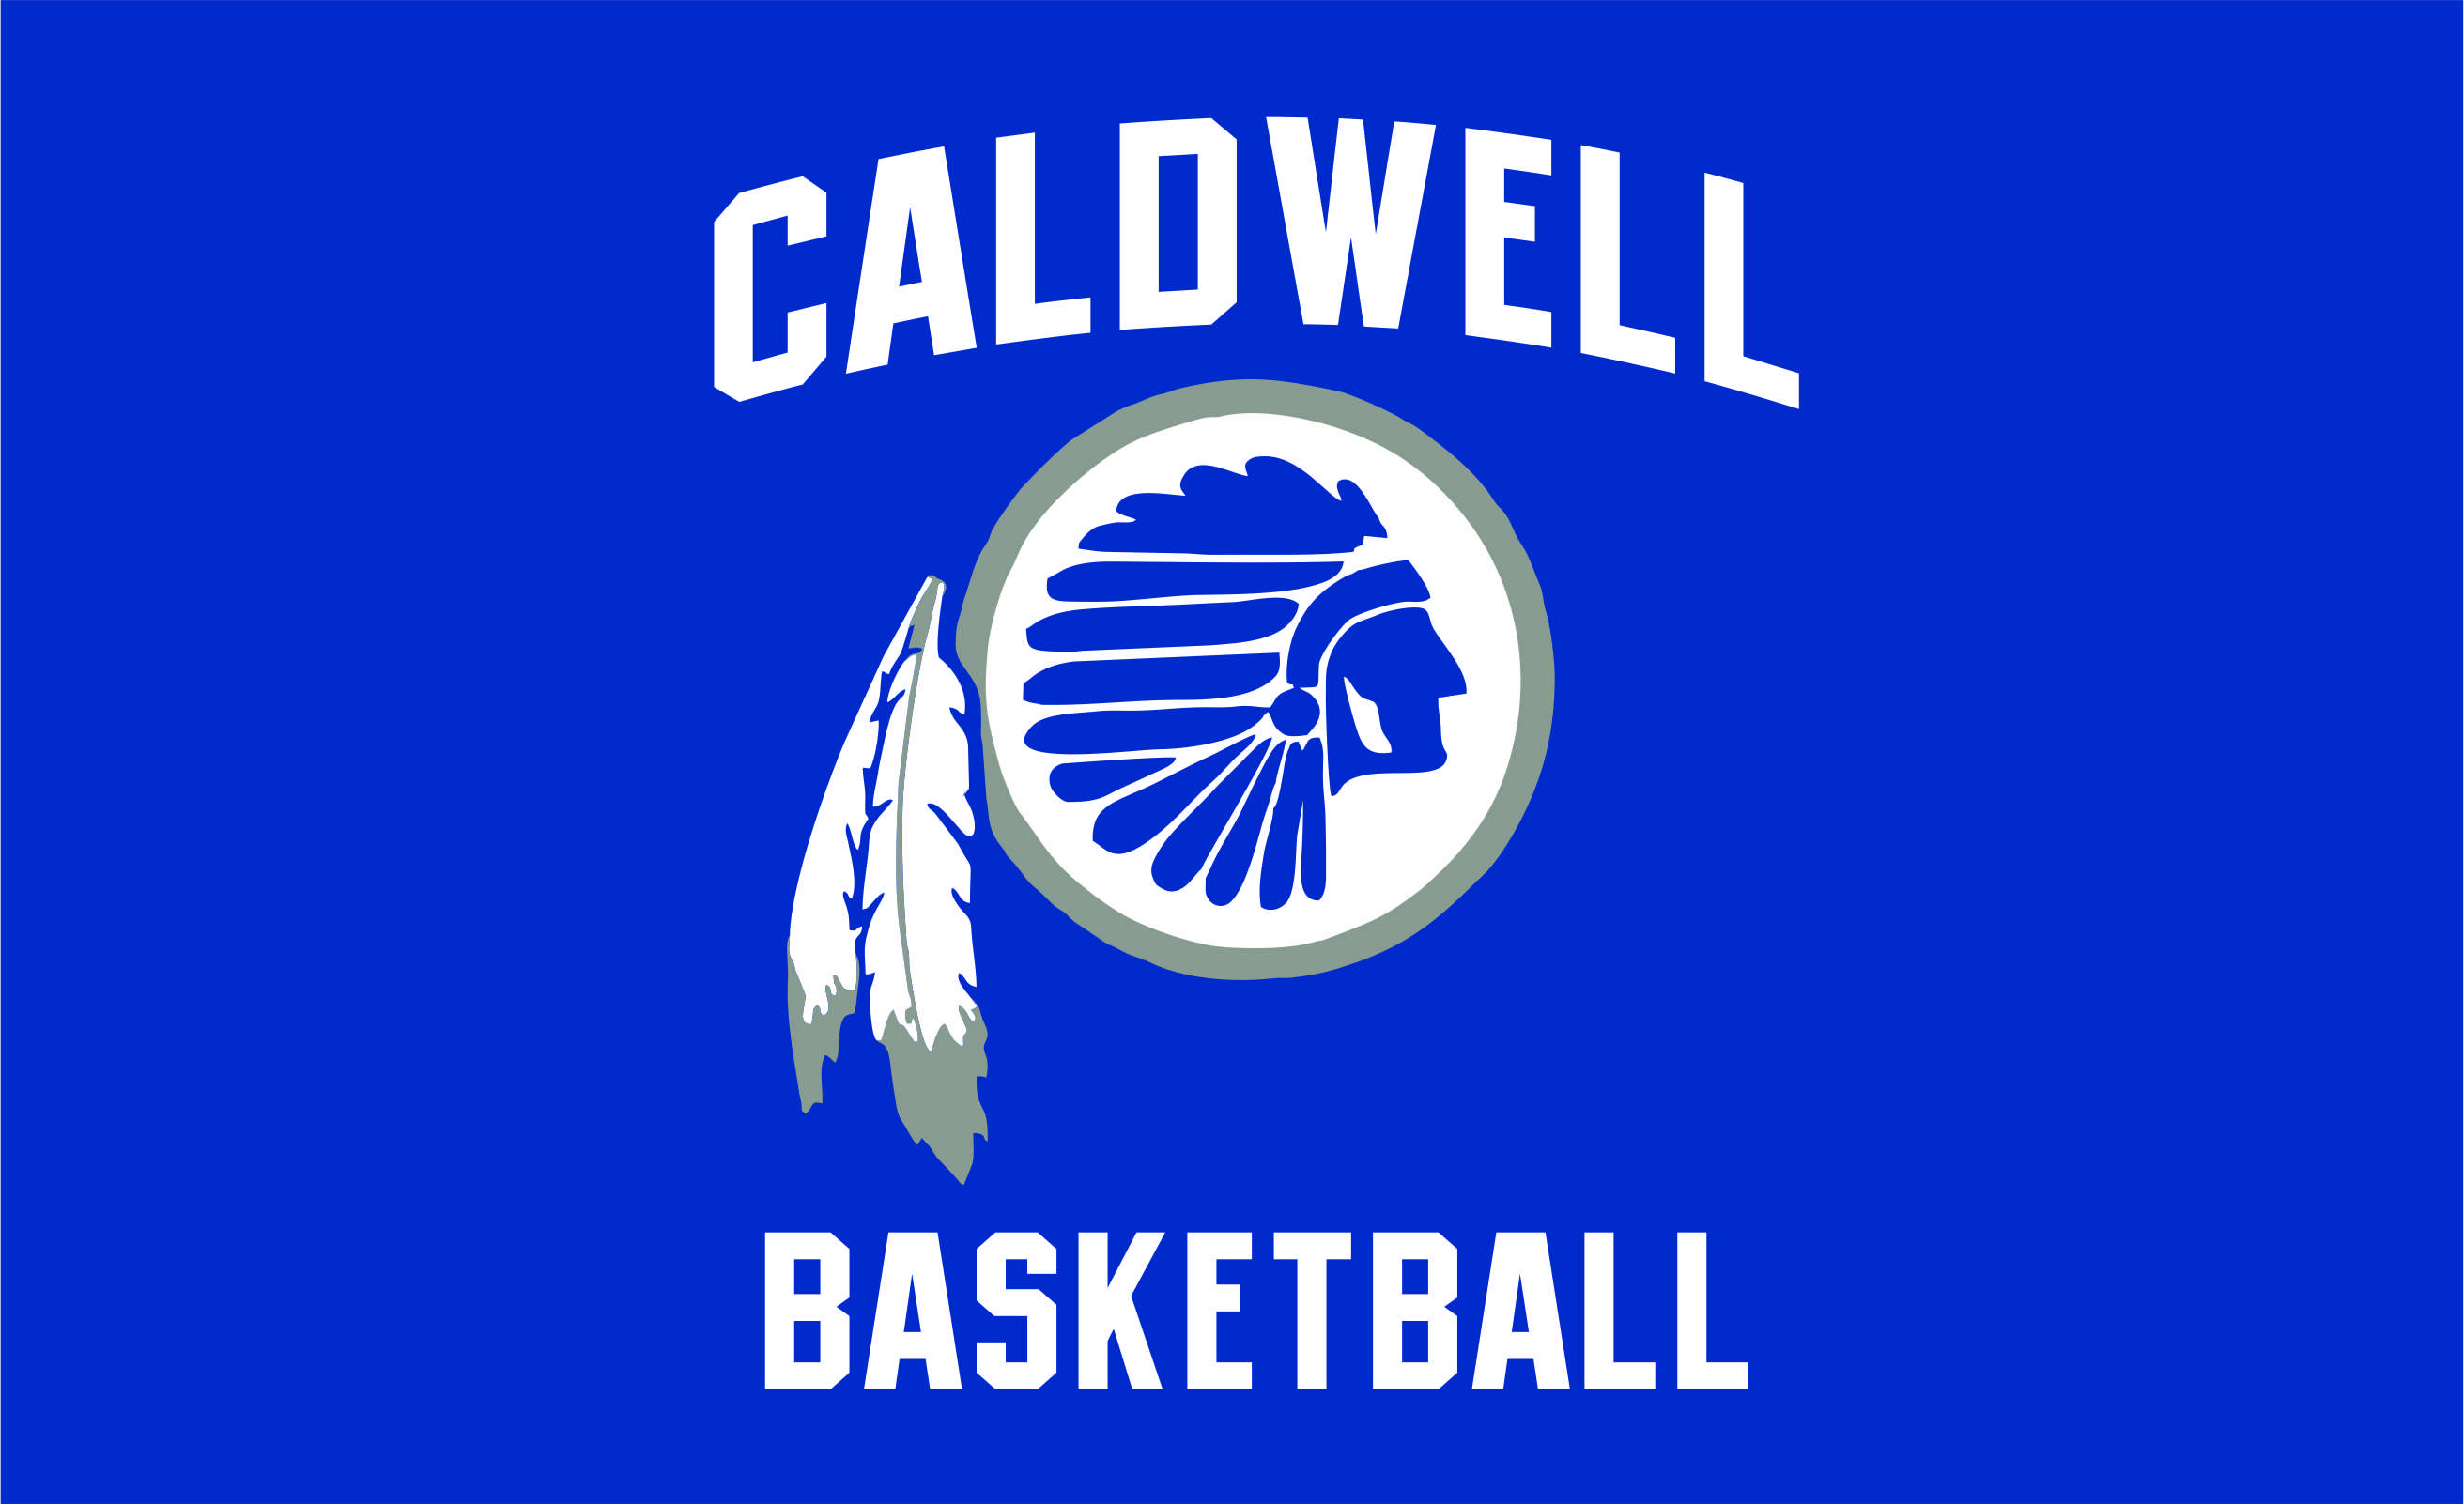 Caldwell Basketball